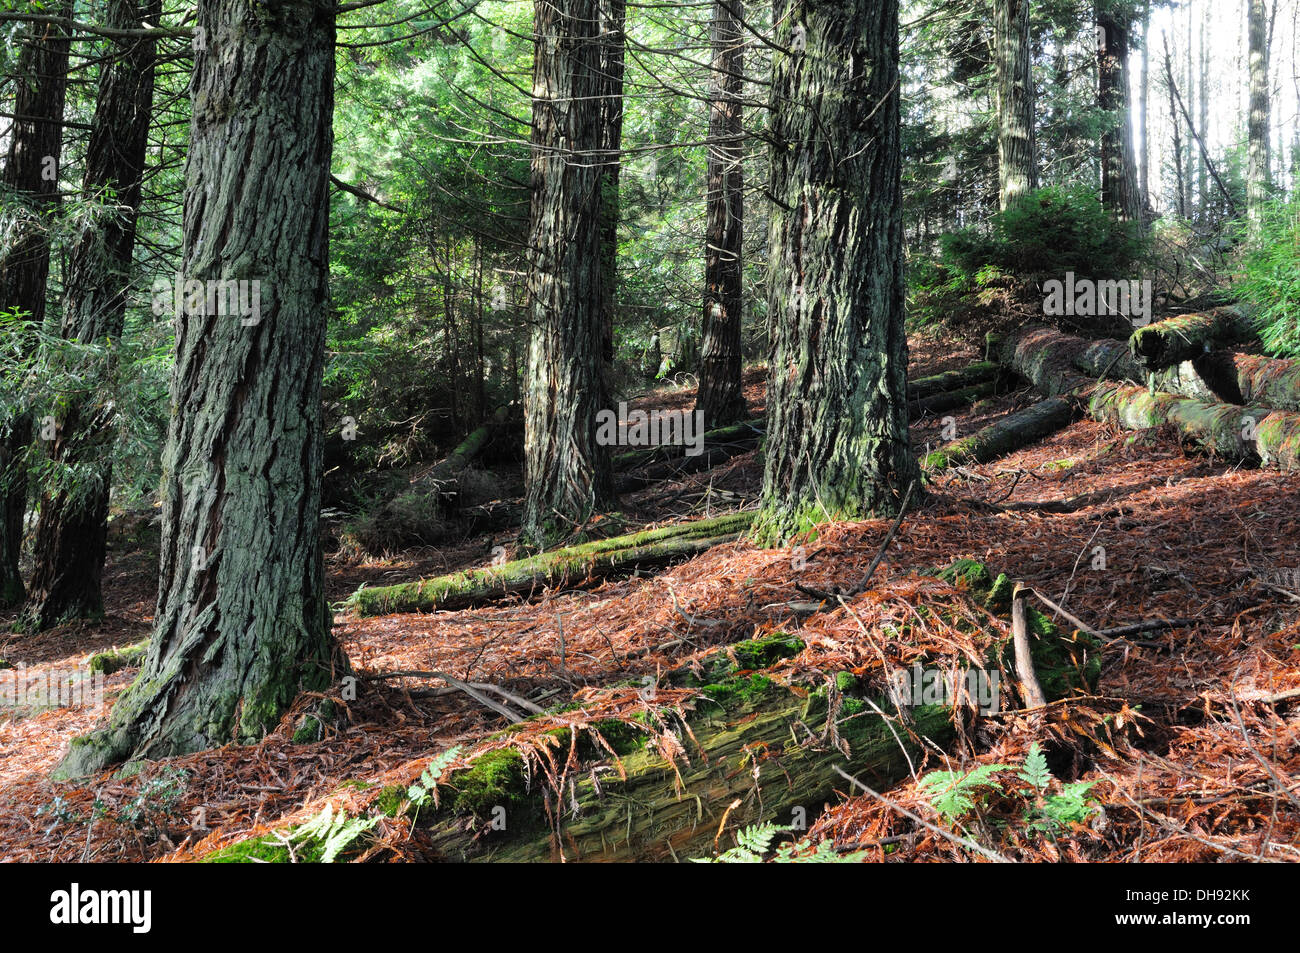 Coast Redwood Bäume Teil der Testversion Pflanzungen Forest Garden Walk Brechfa Wald Carmarthenshire Wales Cymru UK GB Stockfoto